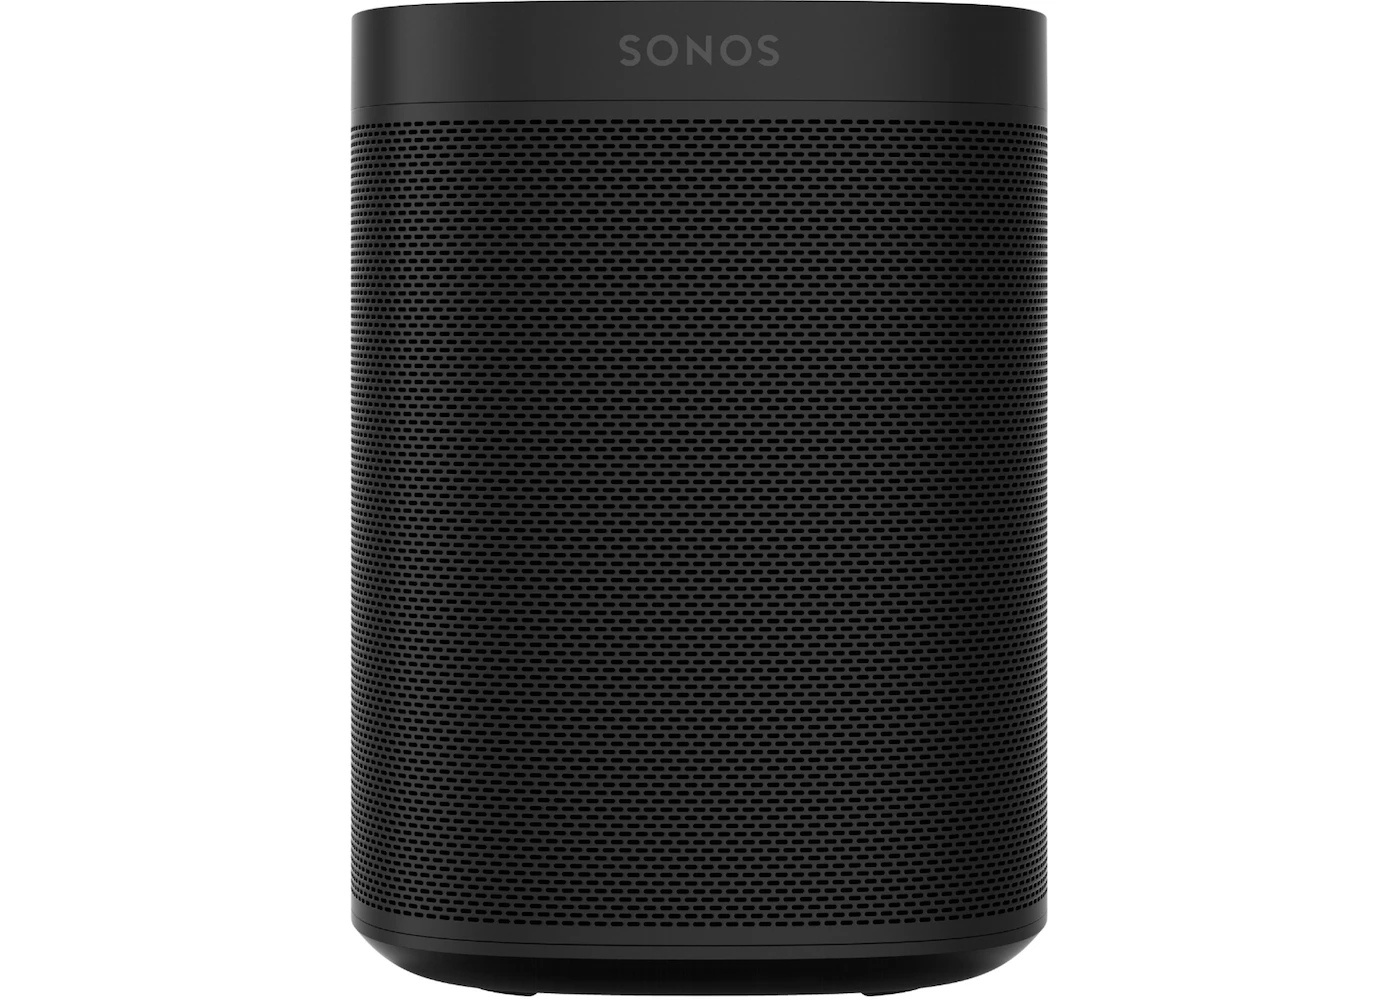 Ambiente Reacondicionamiento arbusto Sonos One (Gen 2) Smart Speaker w/ Voice Control ONEG2US1BLK Black - ES